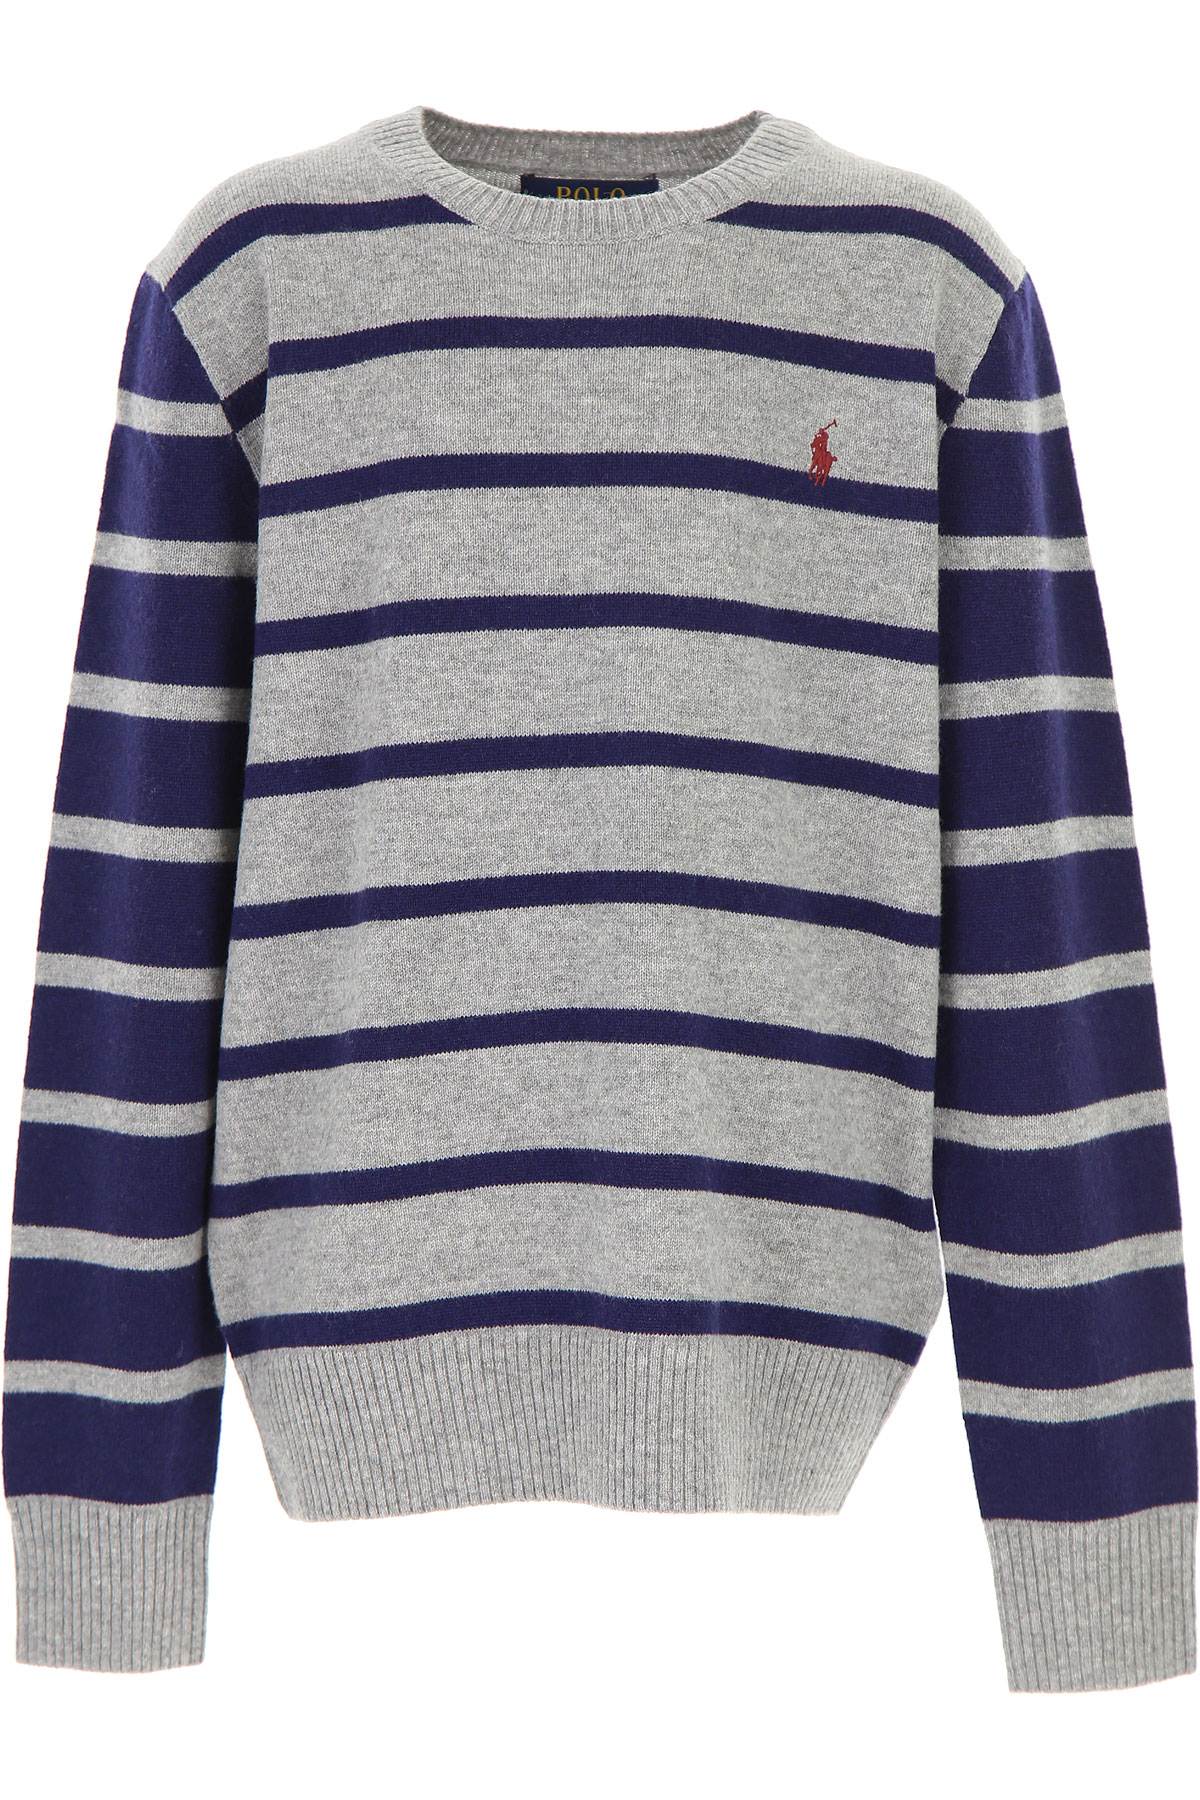 Ralph Lauren Kinder Pullover für Jungen Günstig im Outlet Sale, Grau, Wolle, 2017, 2Y 4Y L S